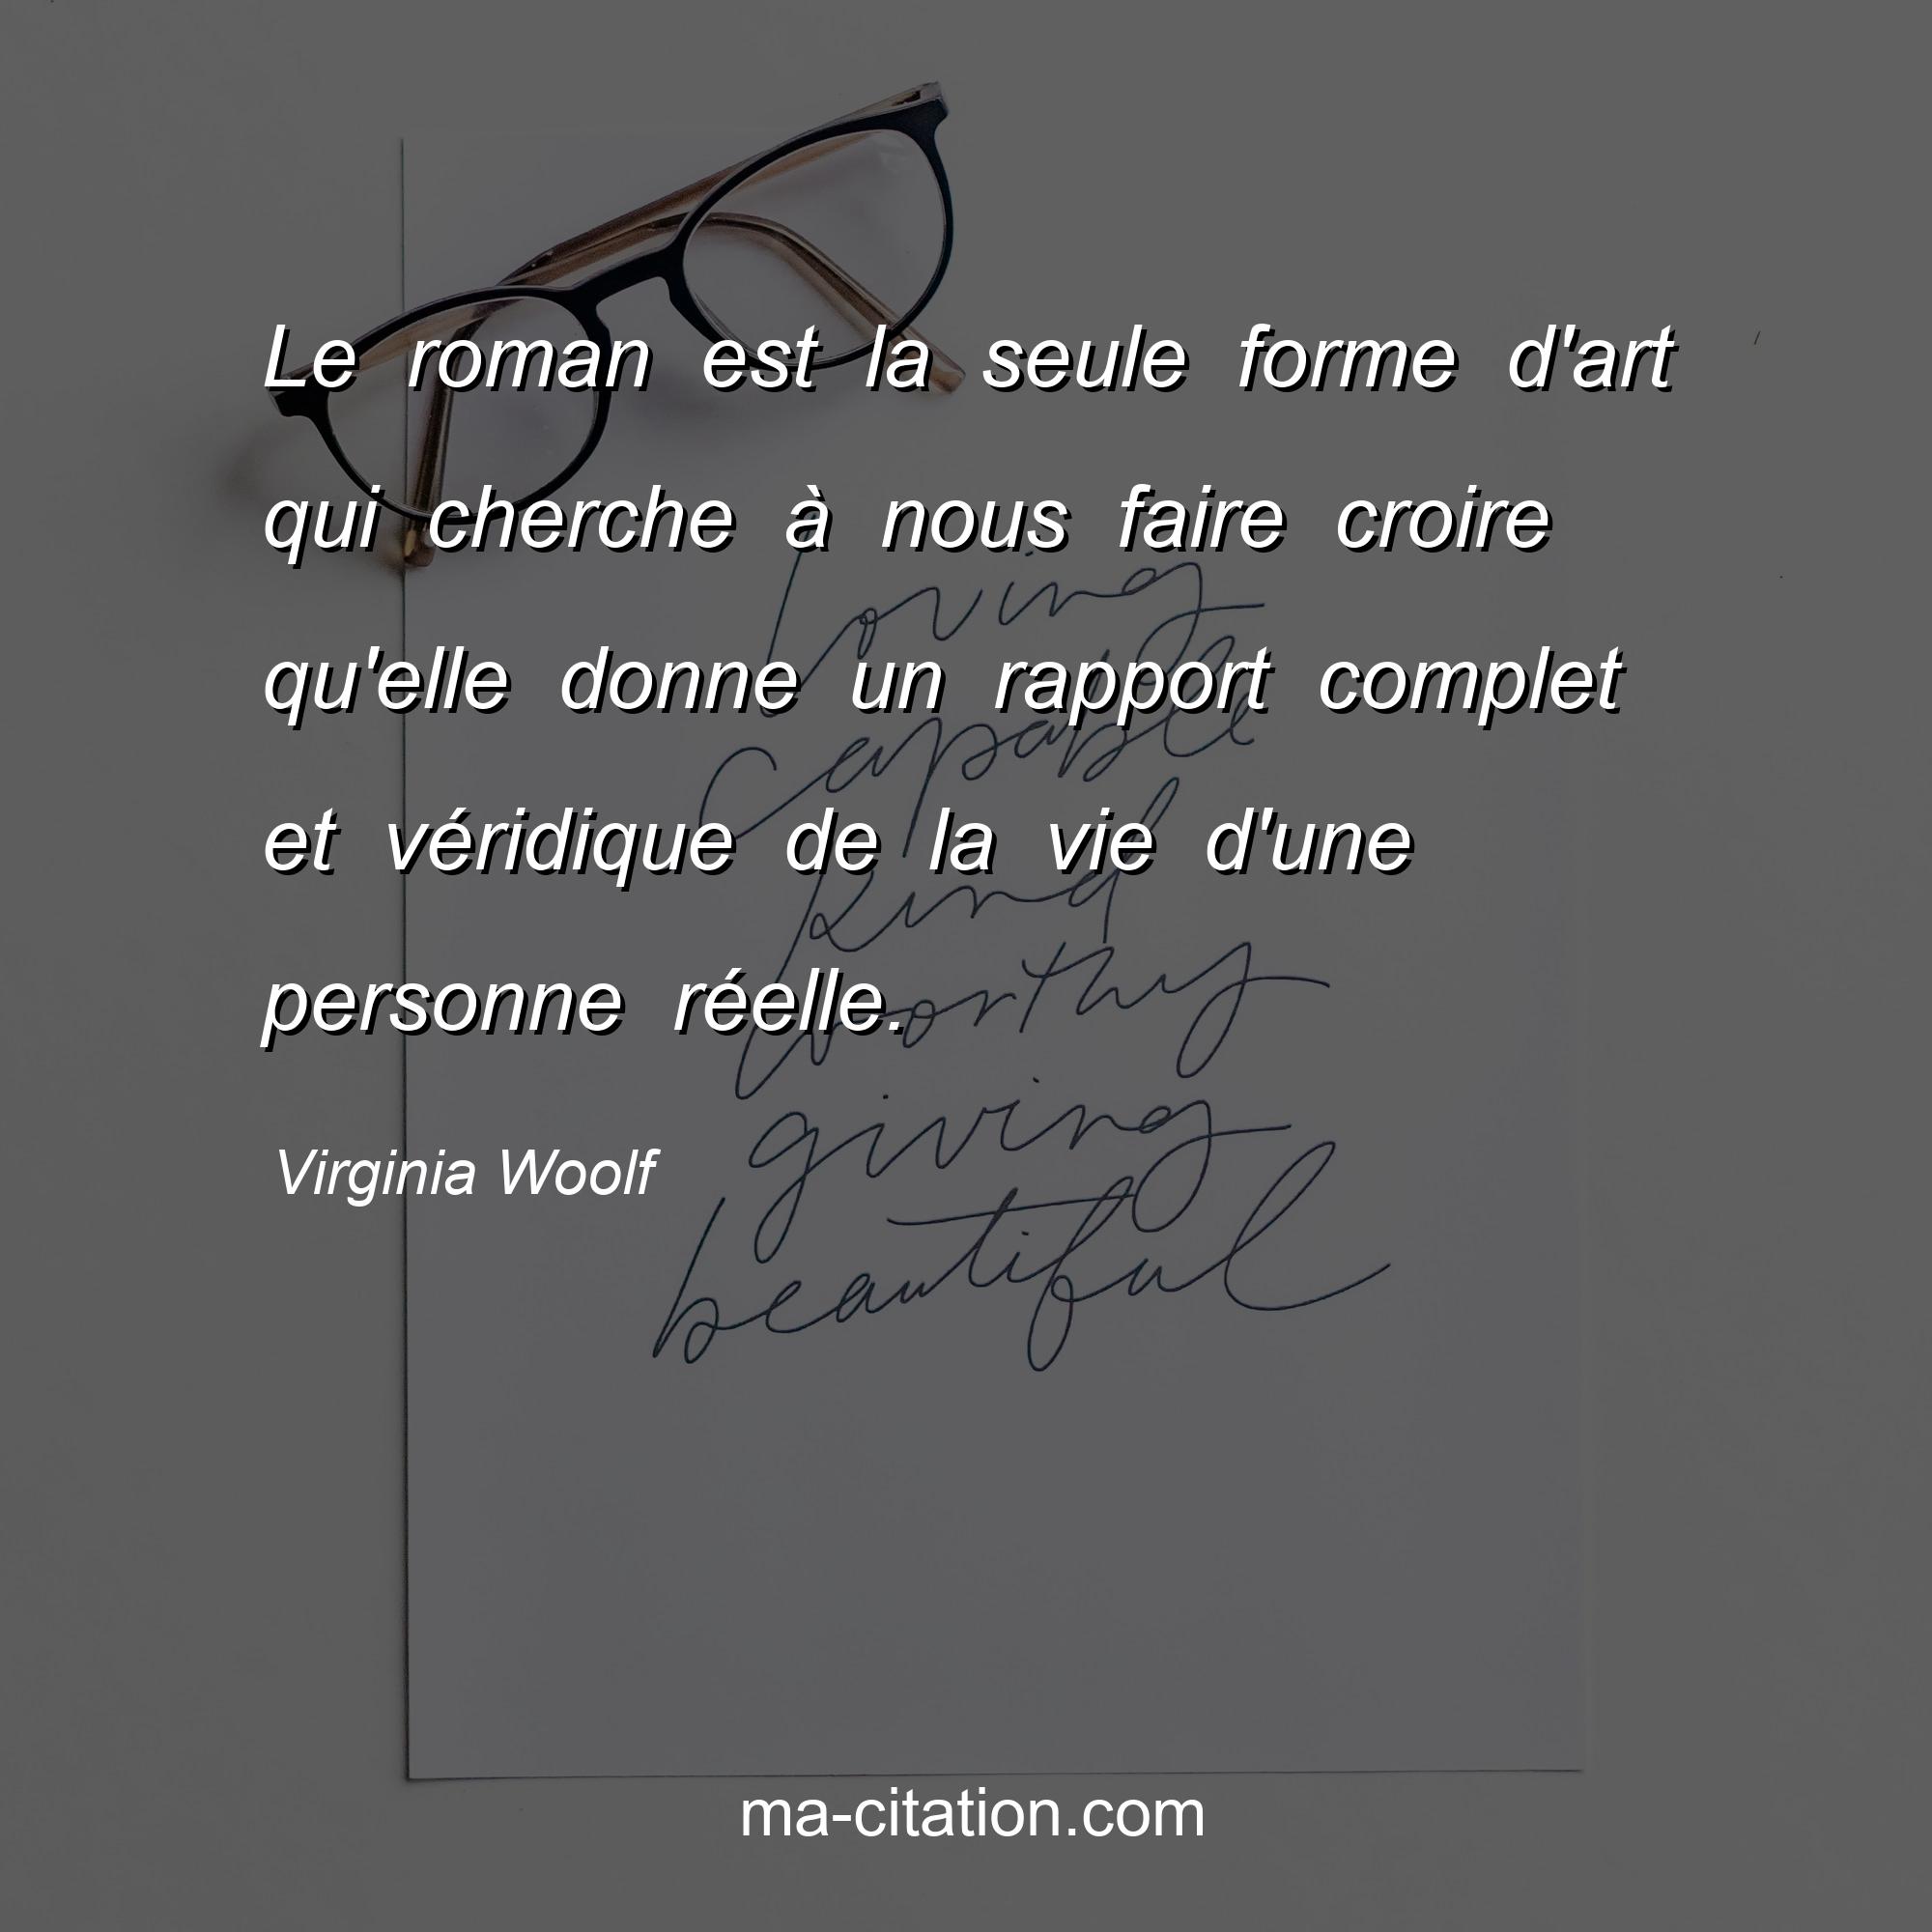 Virginia Woolf : Le roman est la seule forme d'art qui cherche à nous faire croire qu'elle donne un rapport complet et véridique de la vie d'une personne réelle.